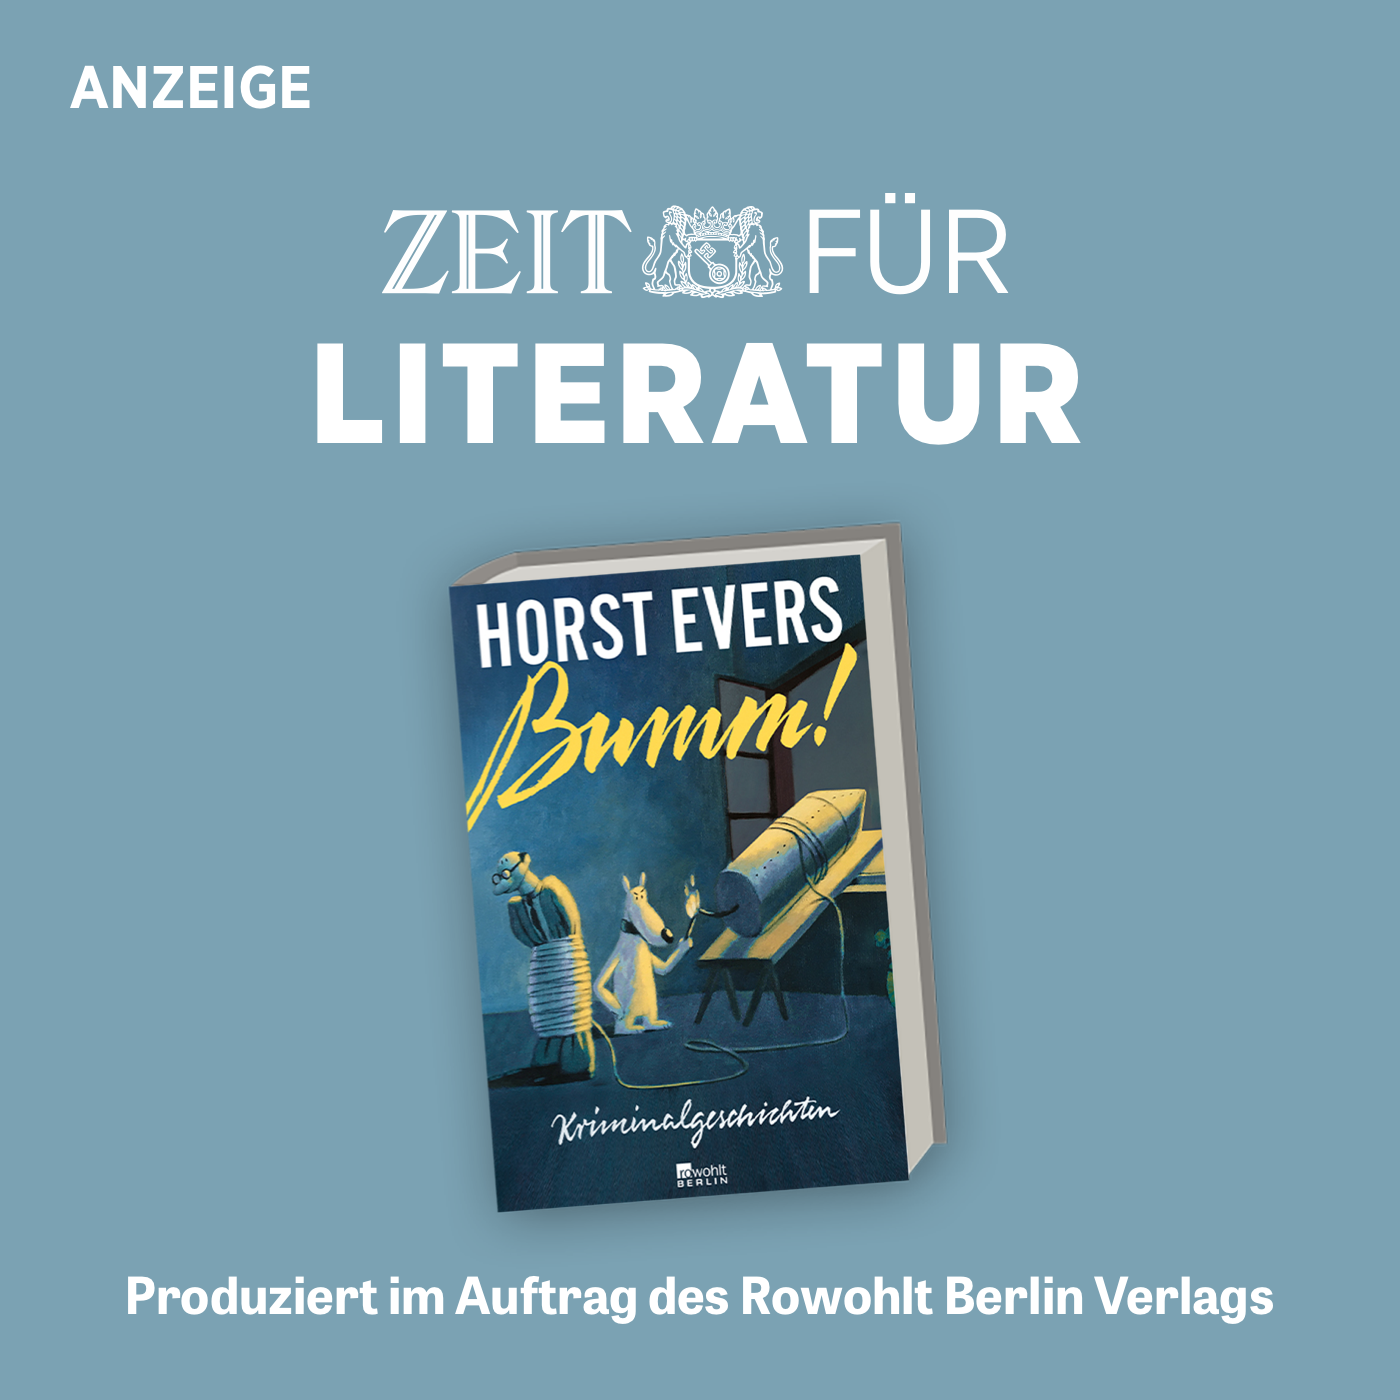 ZEIT für Literatur mit Horst Evers